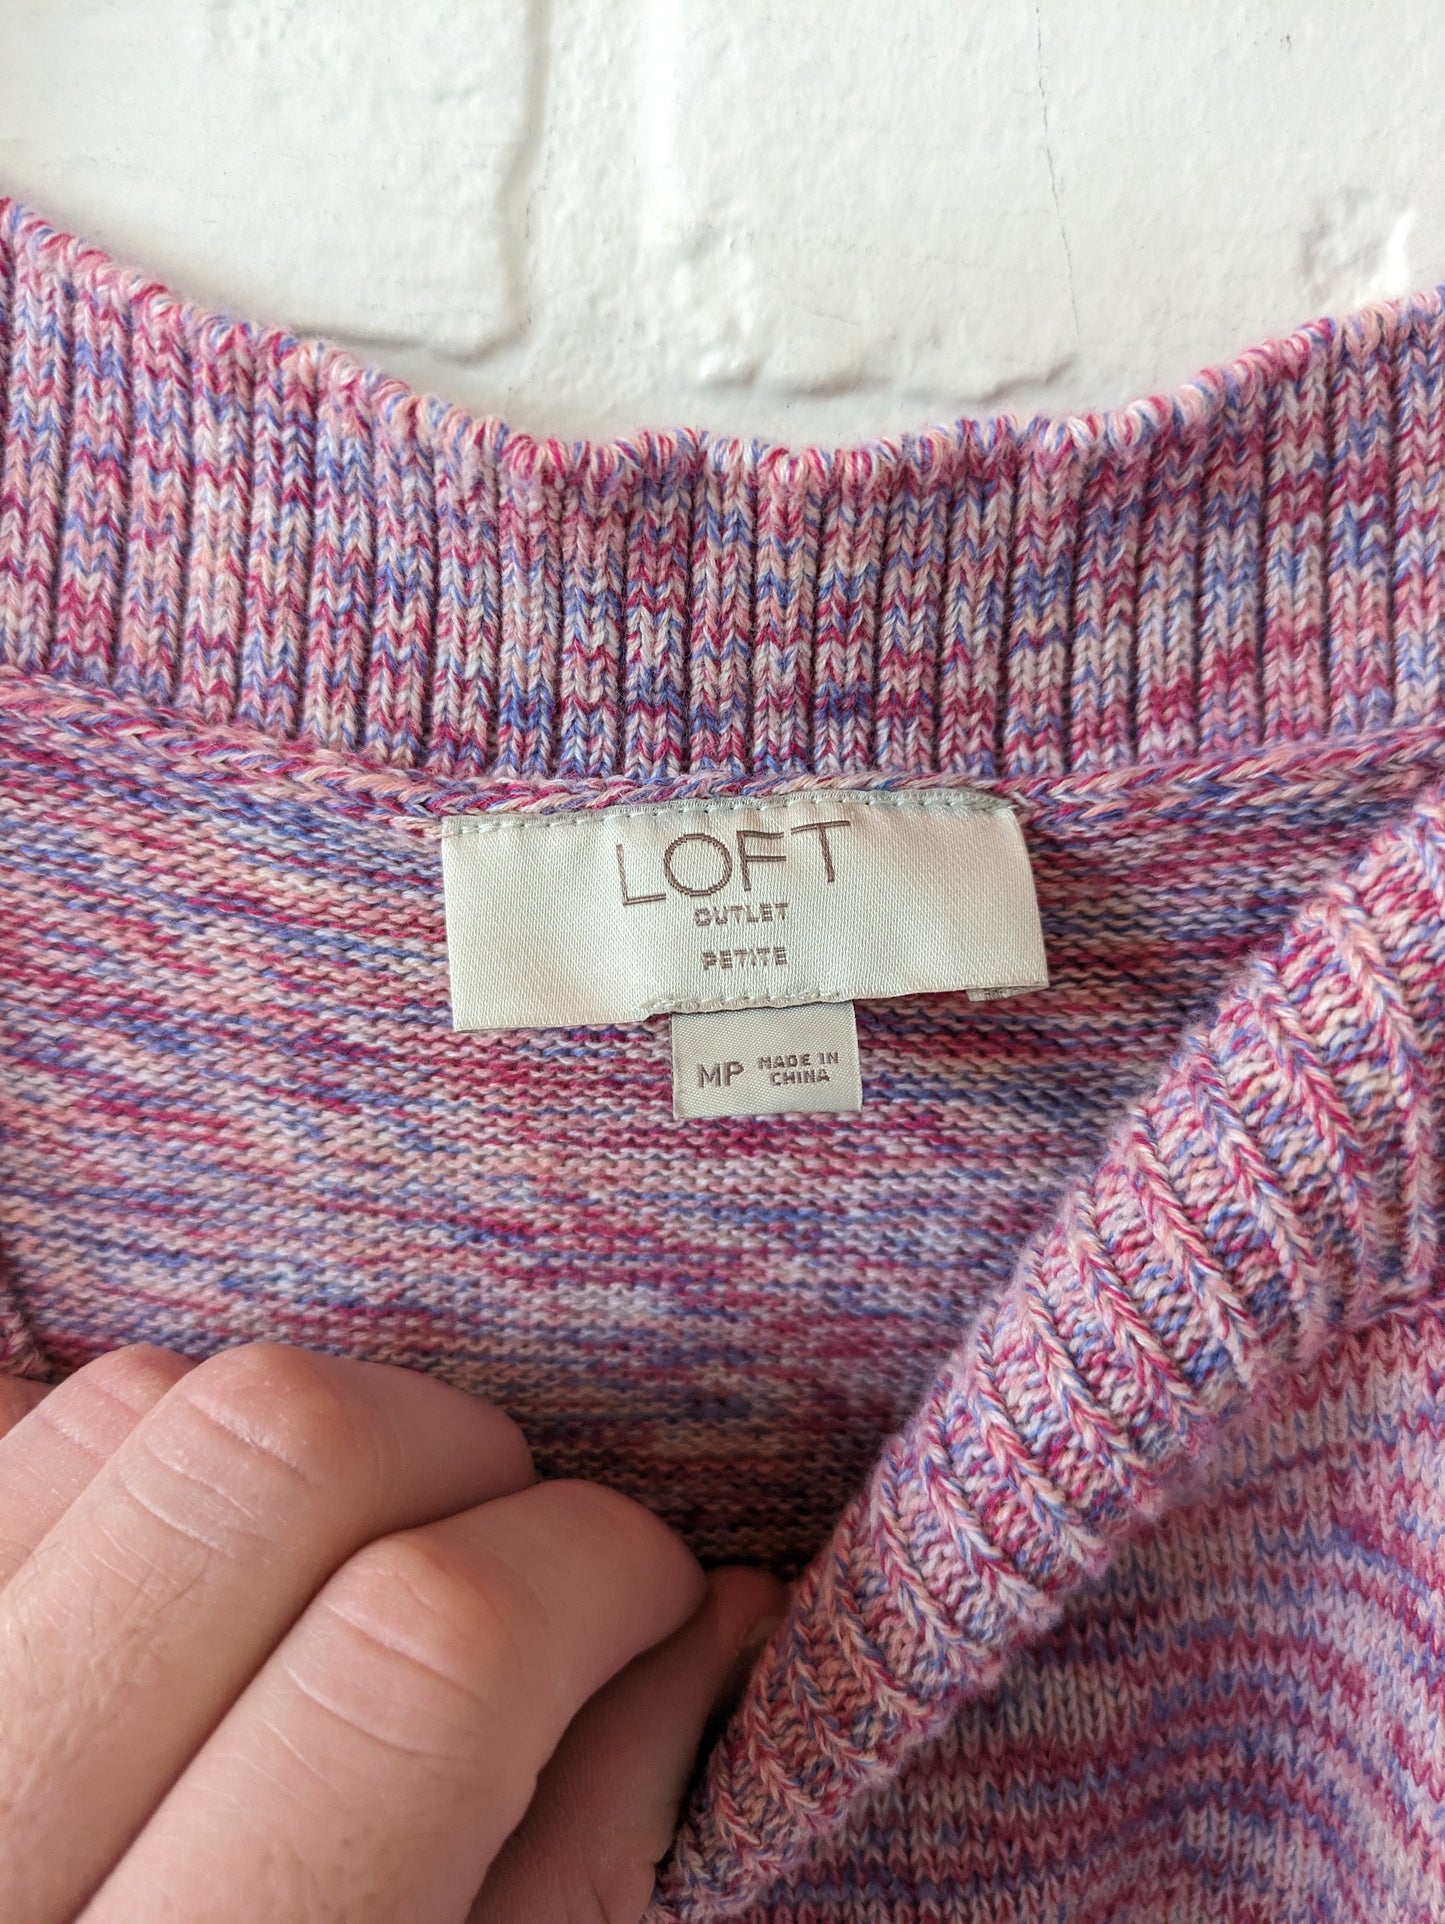 Vest Sweater By Loft  Size: M